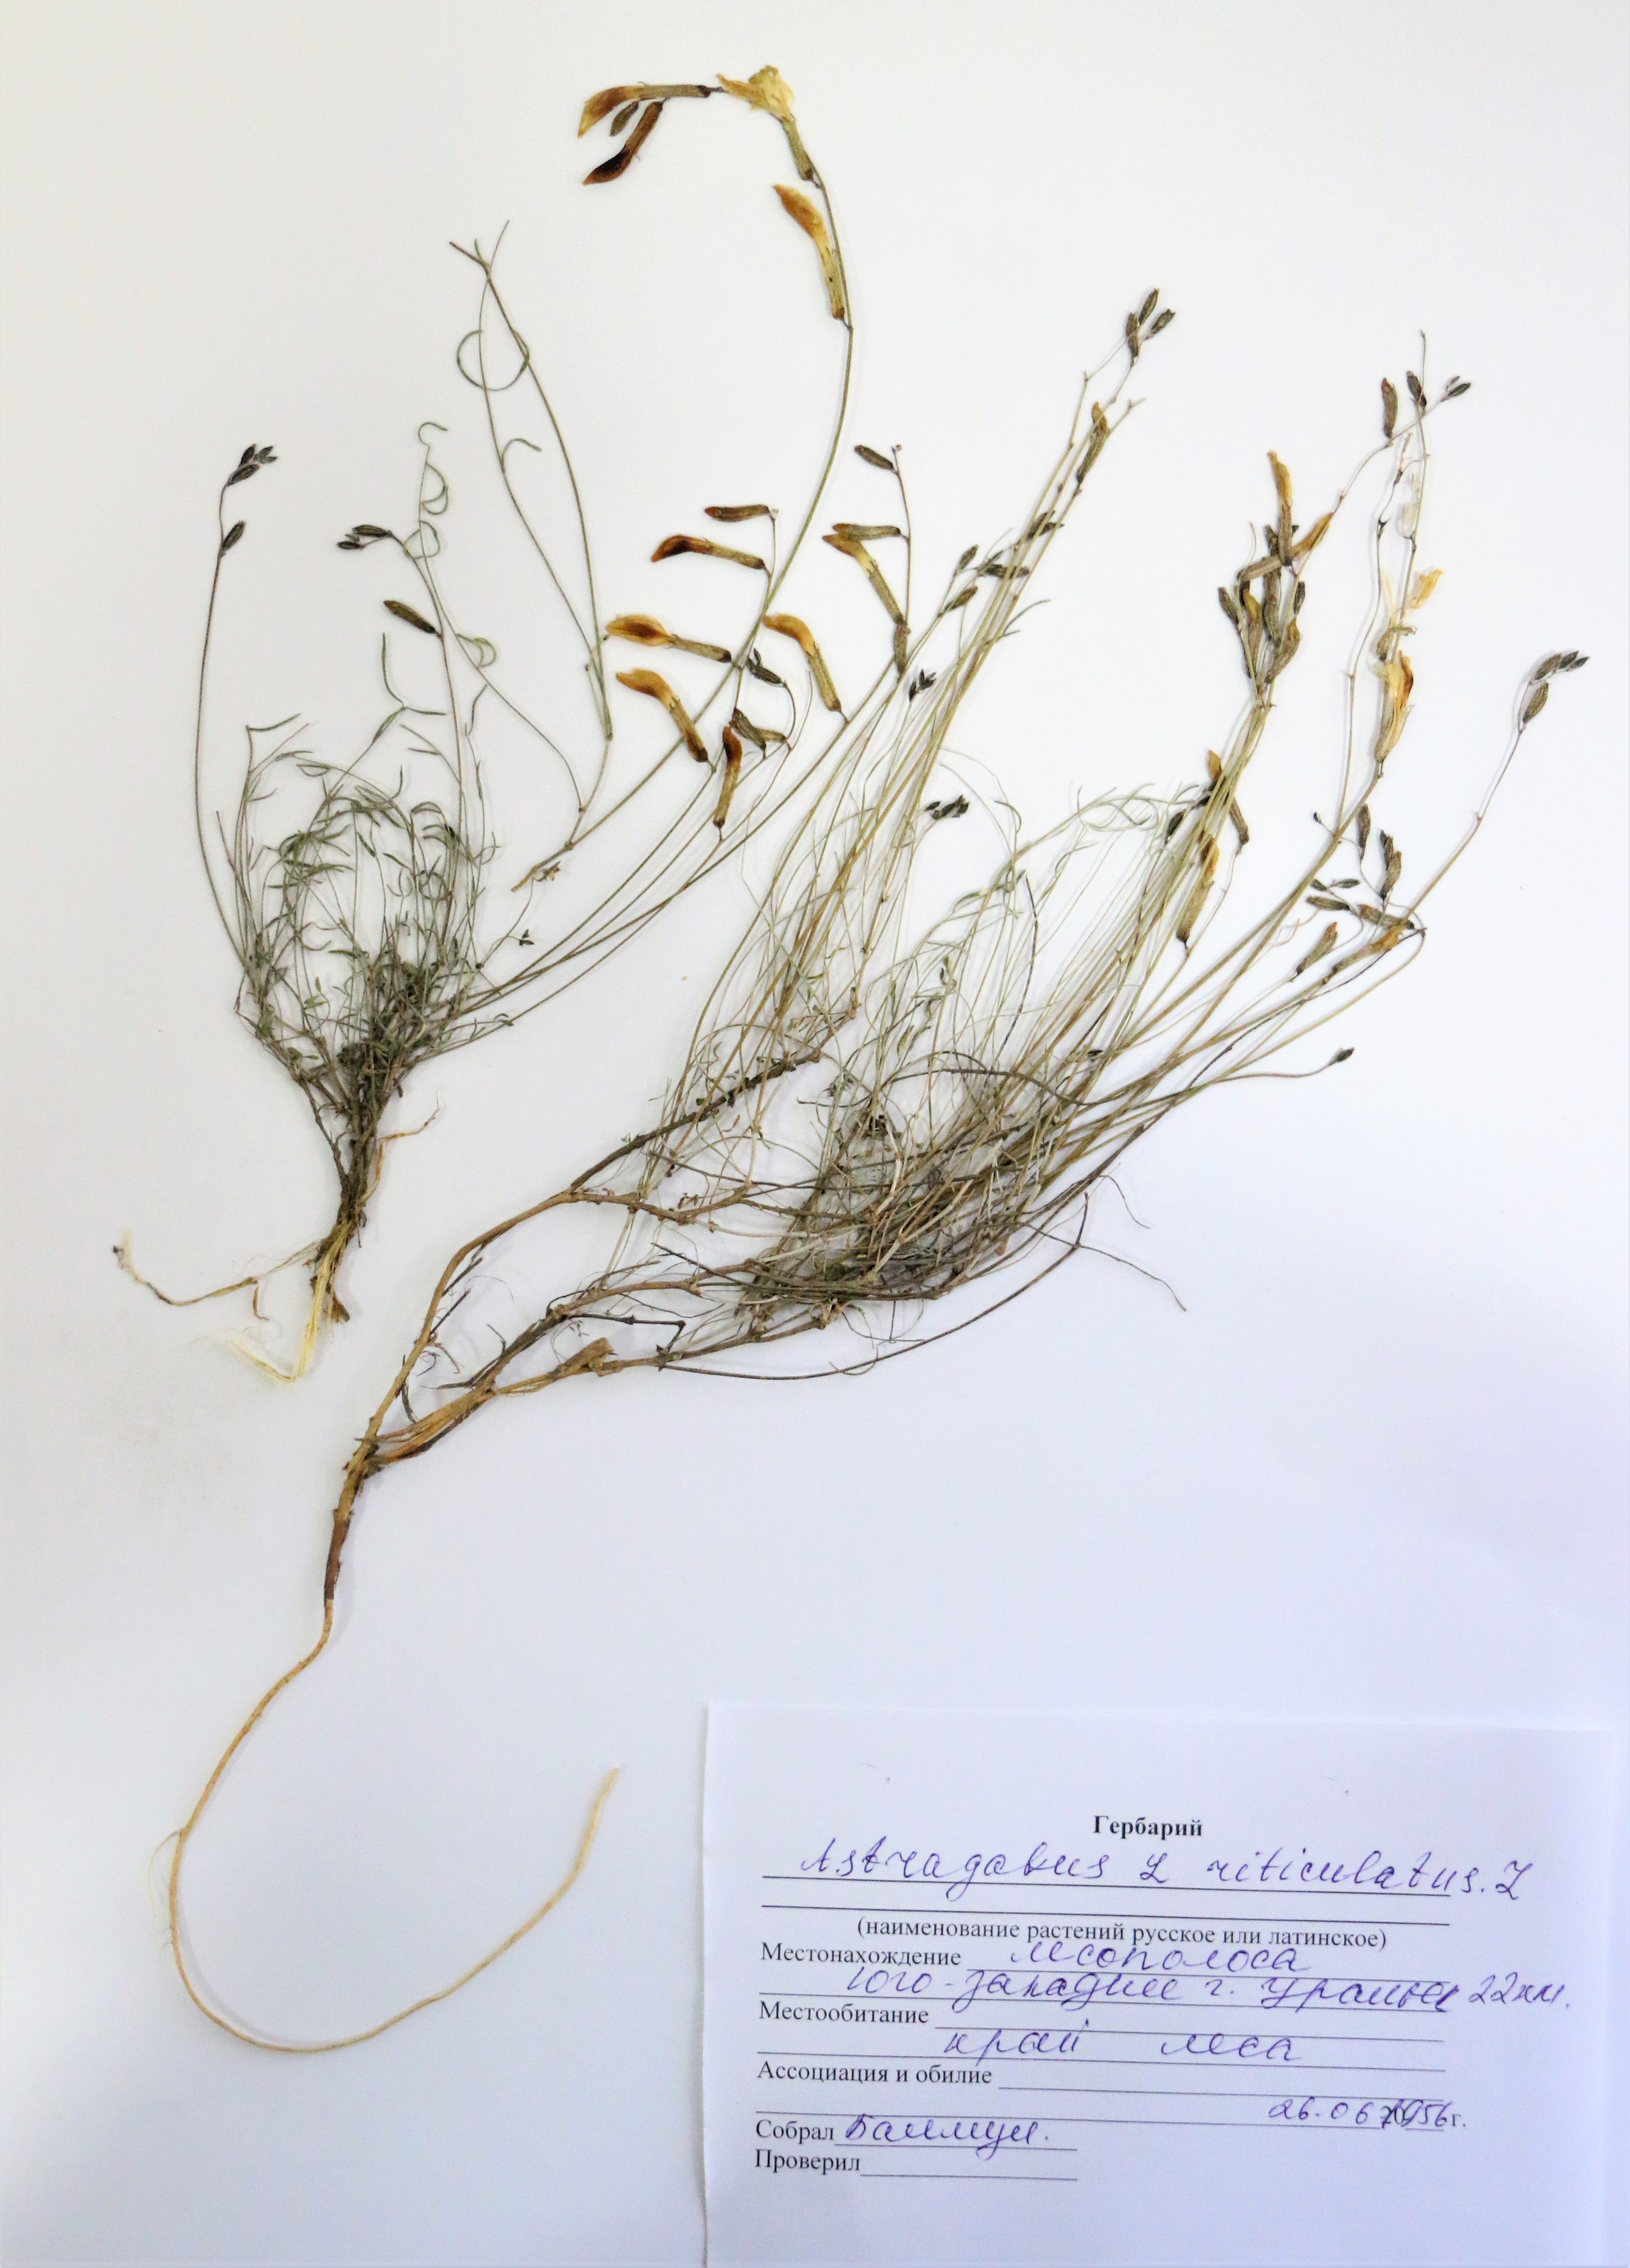 Astragalus reticulatus L- Астрагал сетчатый - Торлы таспа 